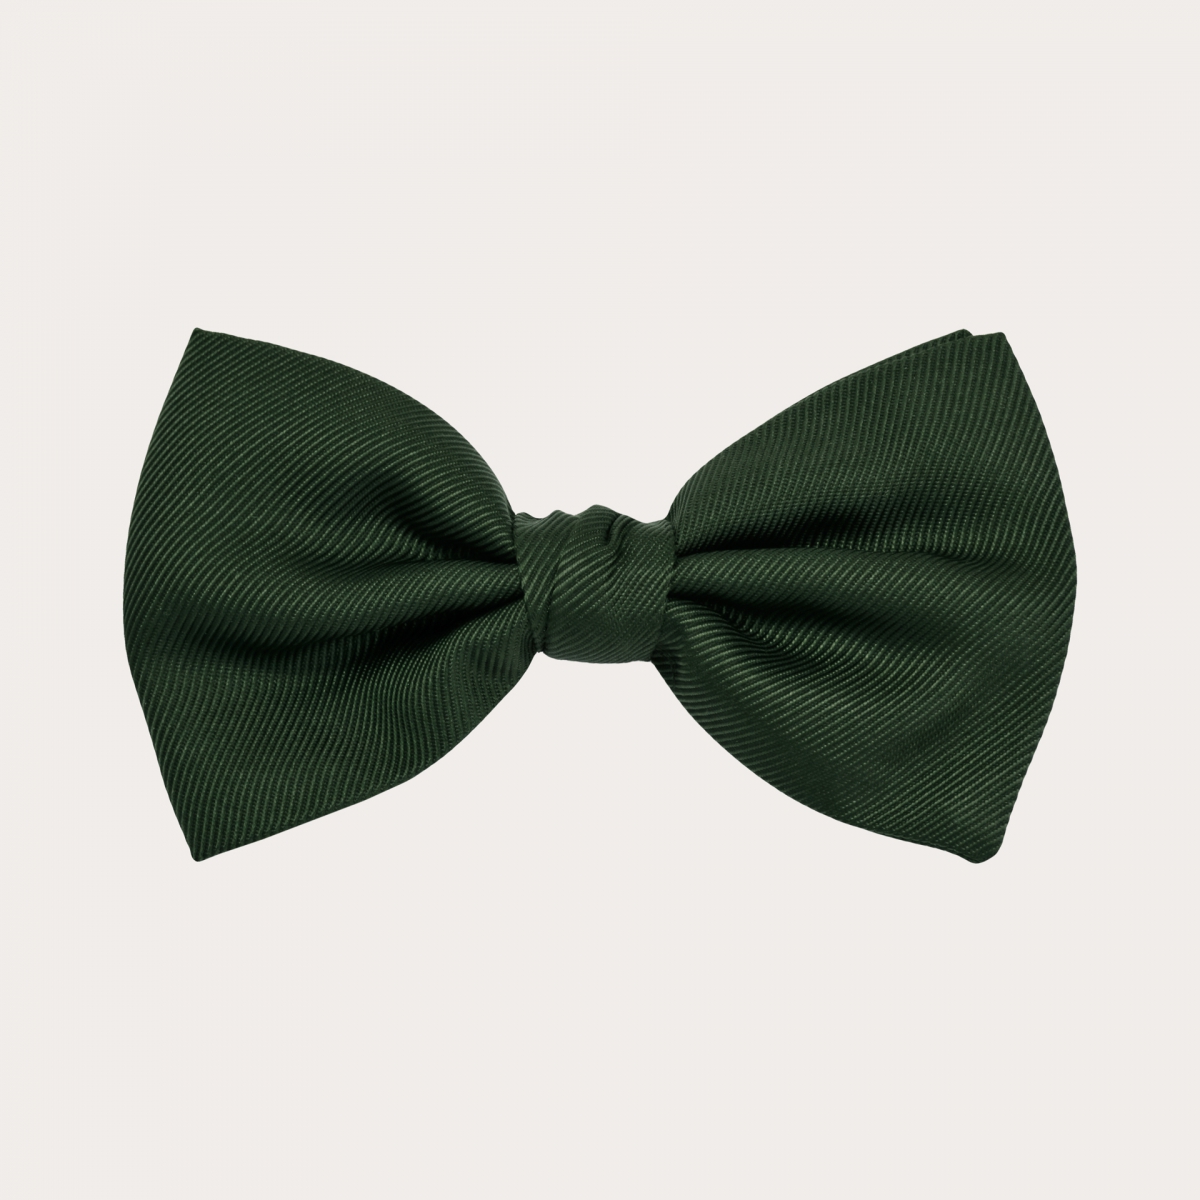 Silk pre-tied bow tie, green